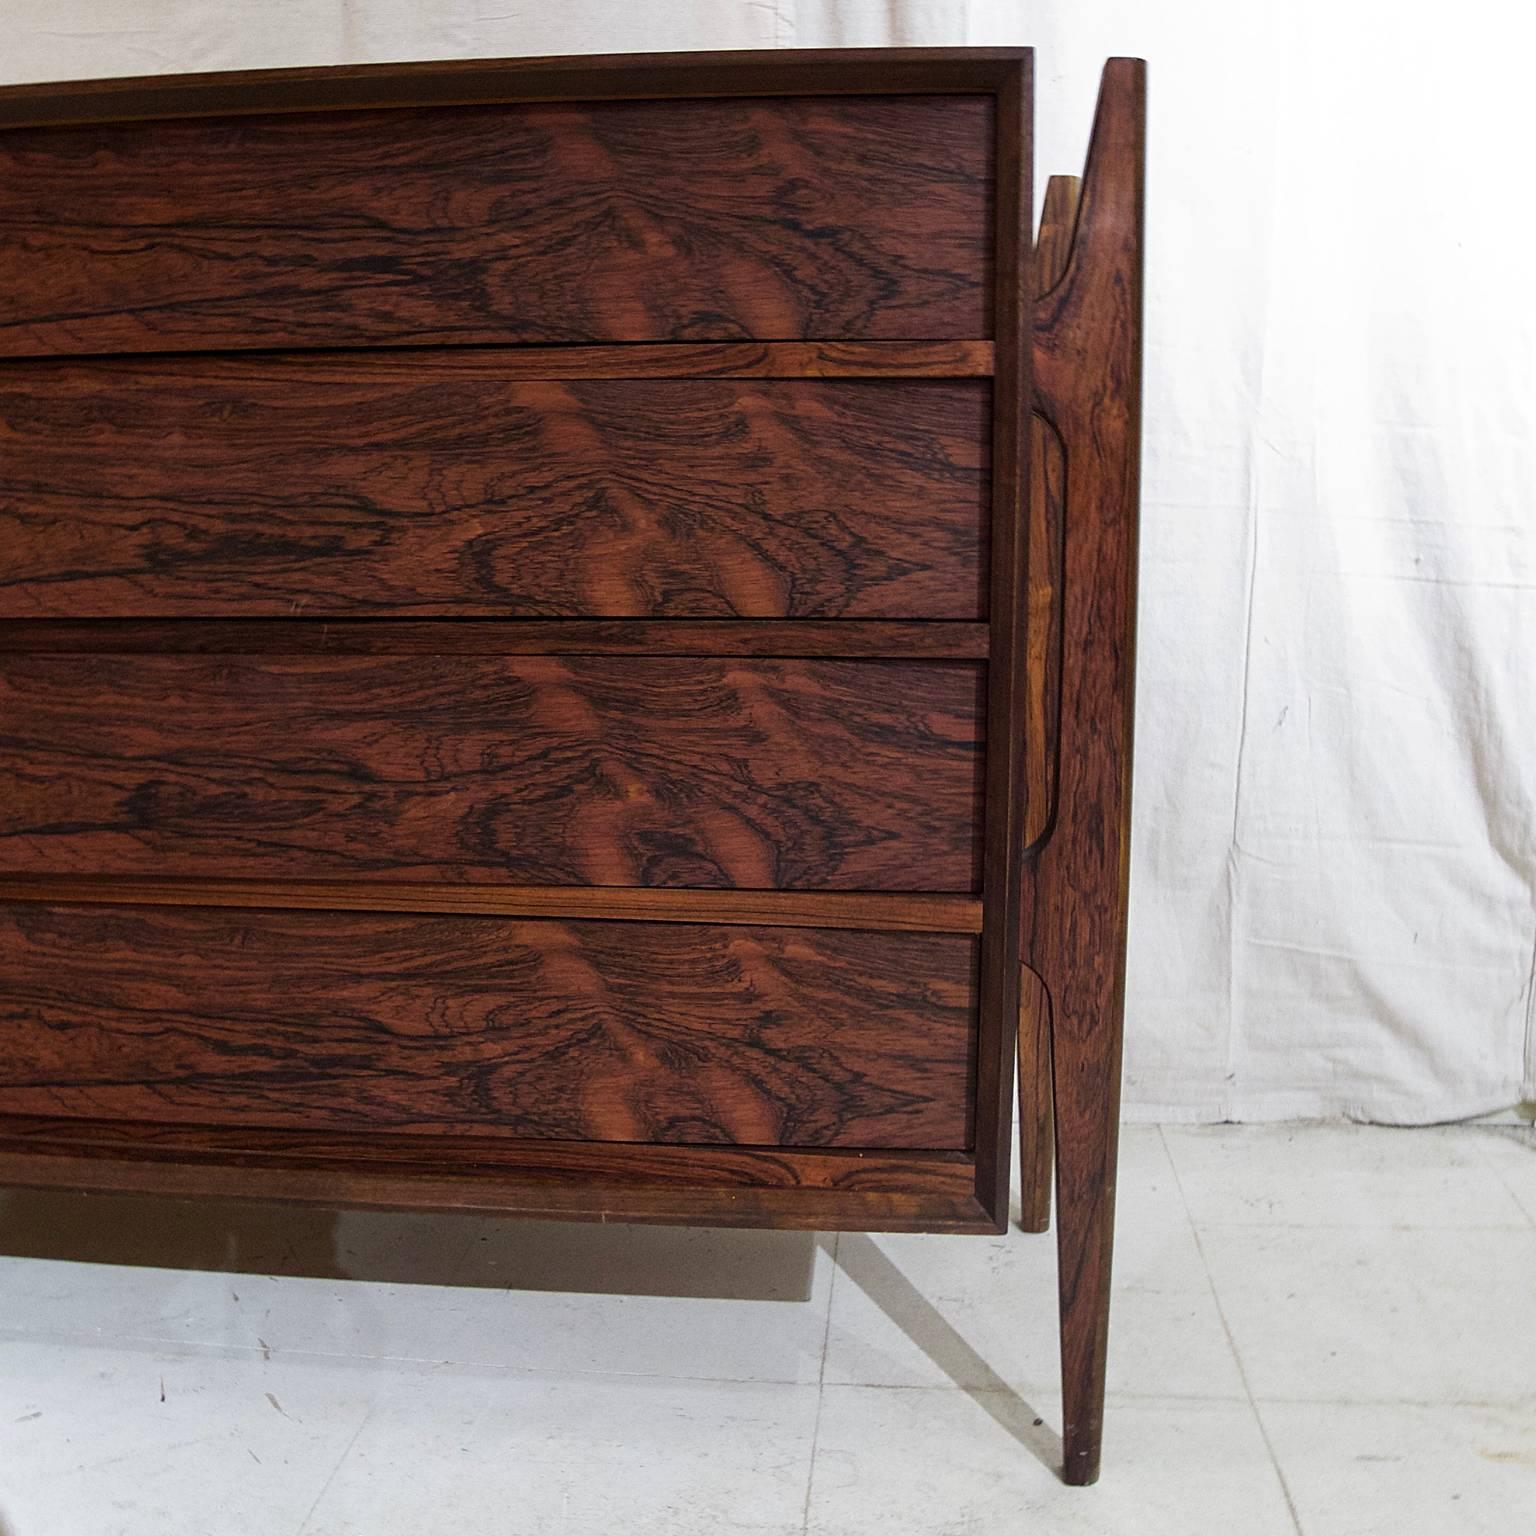 Mid-20th Century Rare Stilted Danish Rosewood Dresser by Jorgen Clausen for Brande Mobelfabrik